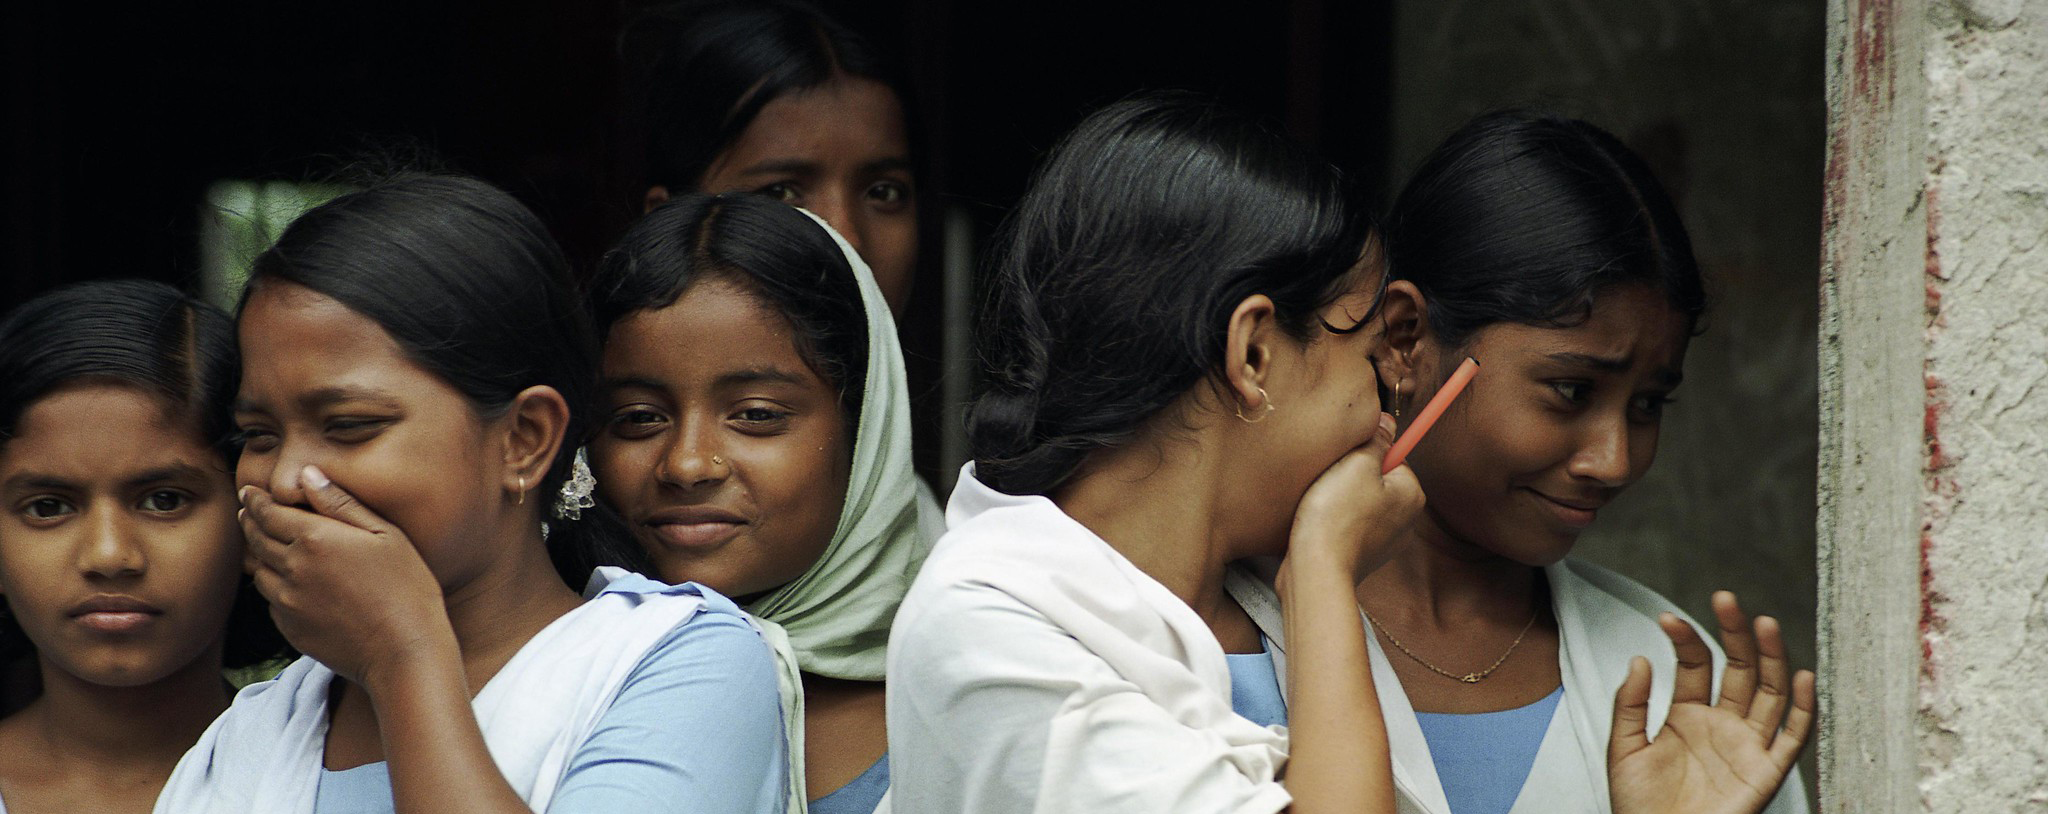 bangladesh girls- world bank